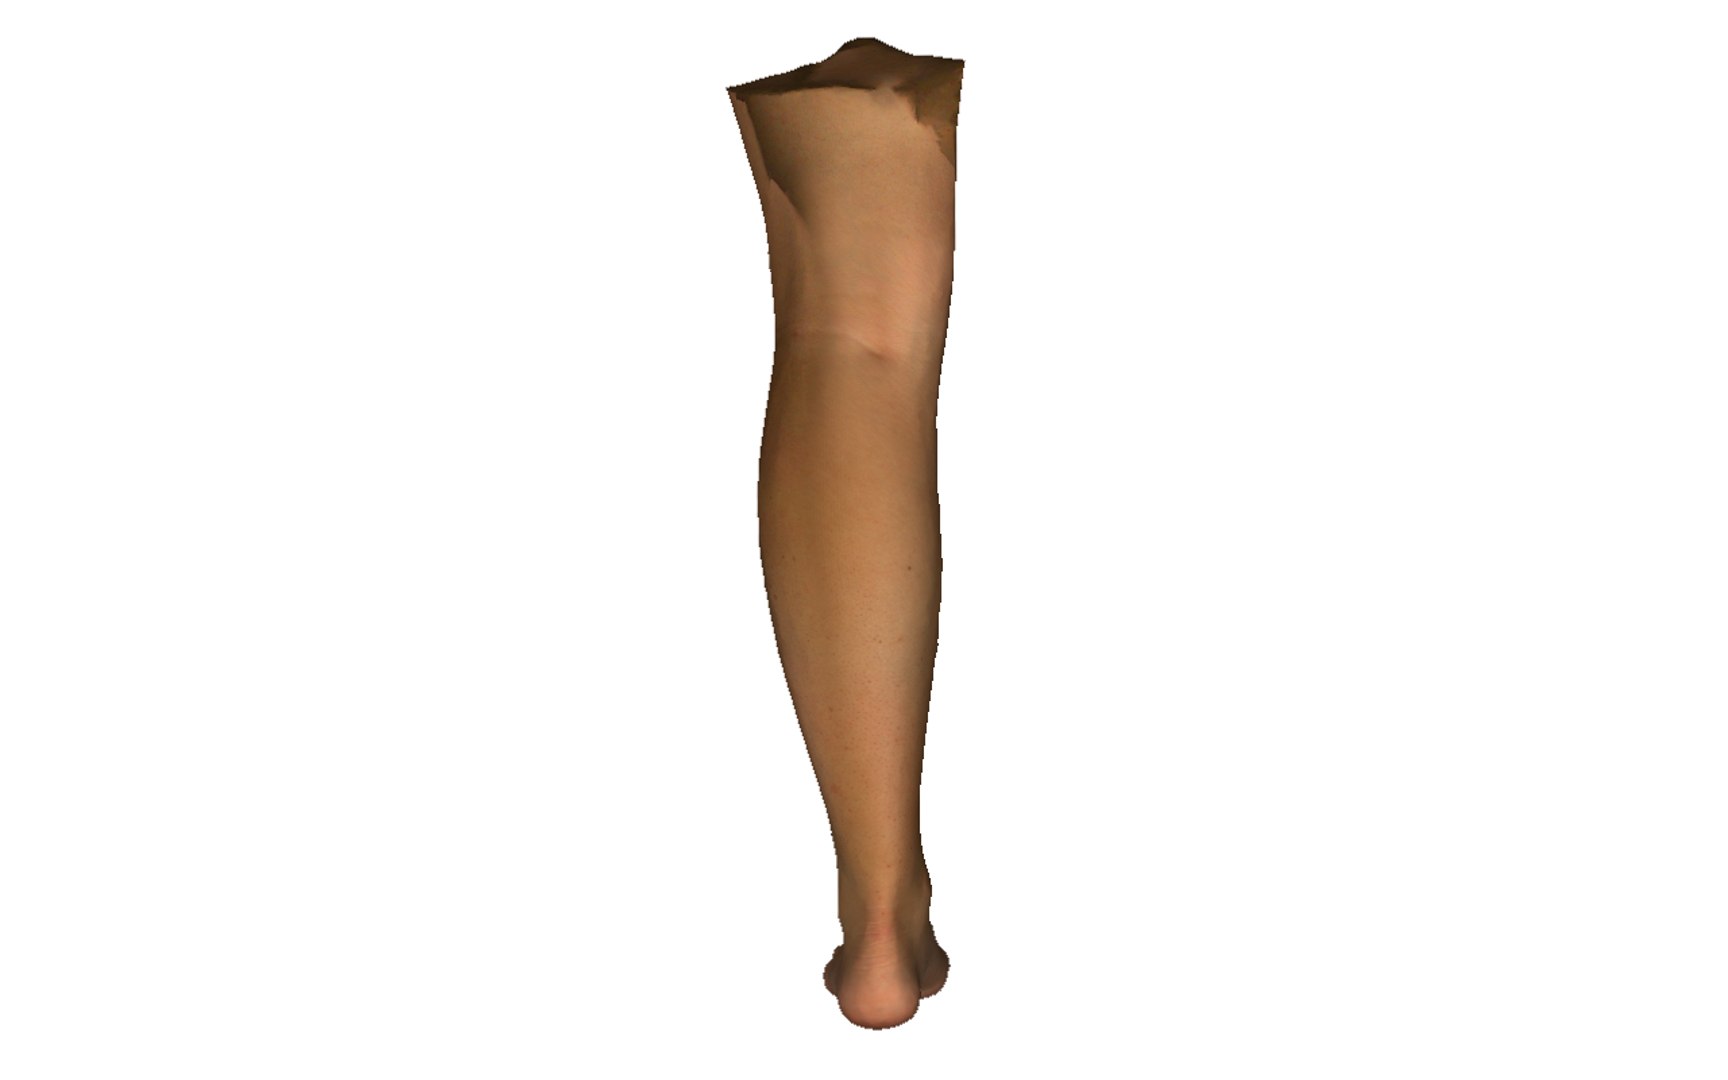 3D leg - TurboSquid 1604799